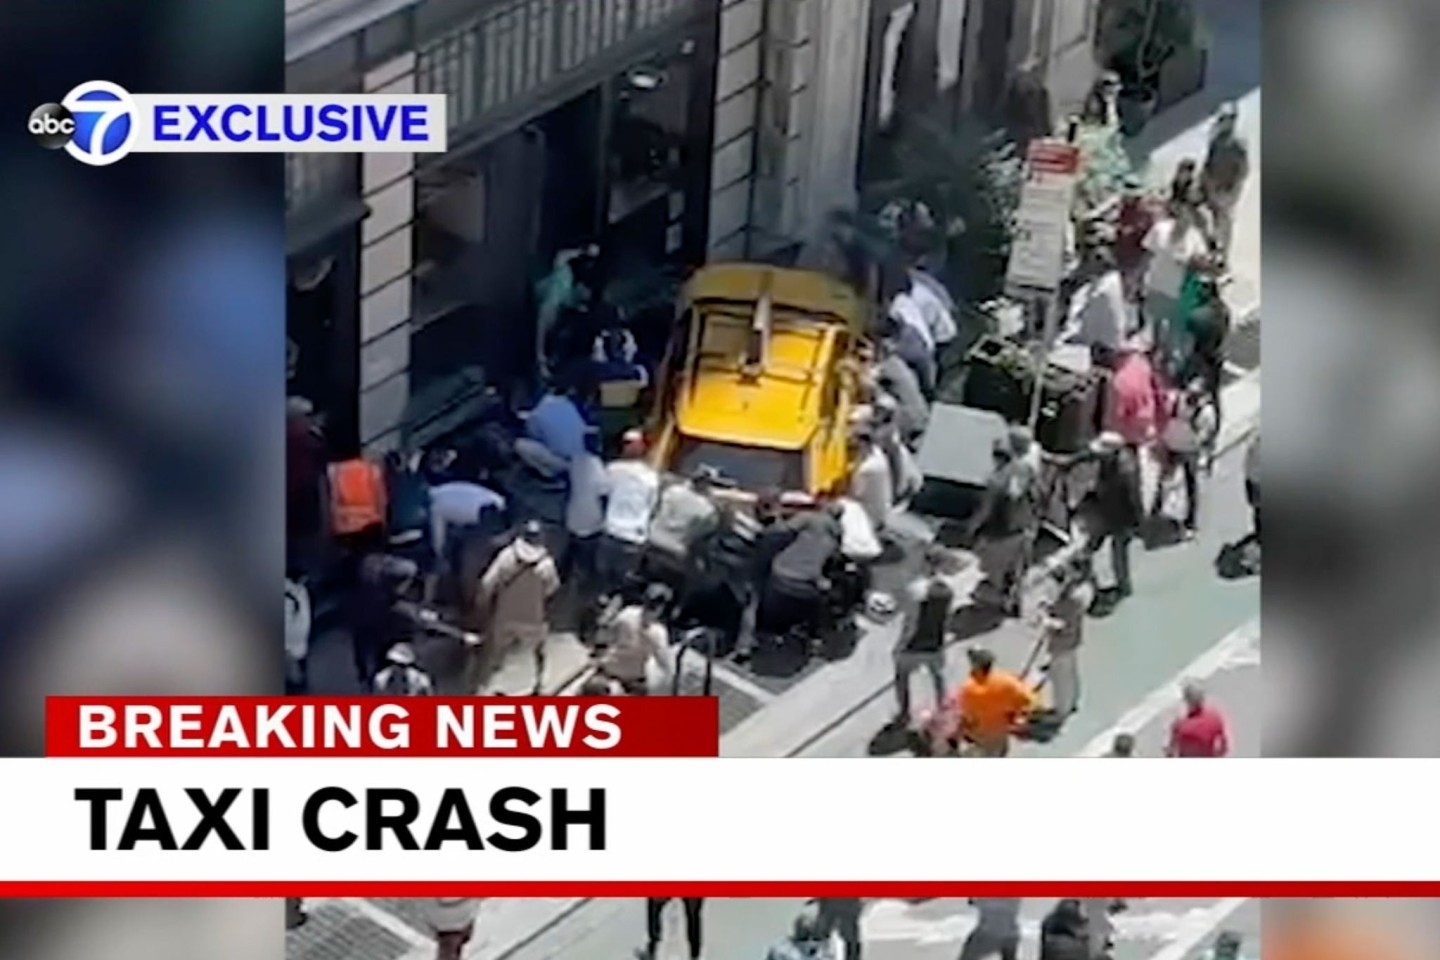 Fernsehbilder zeigen die dramatische Situation: Passanten versuchen nach einem mutmaßlichen Unfall, zwei eingeklemmte Frauen zu befreien.